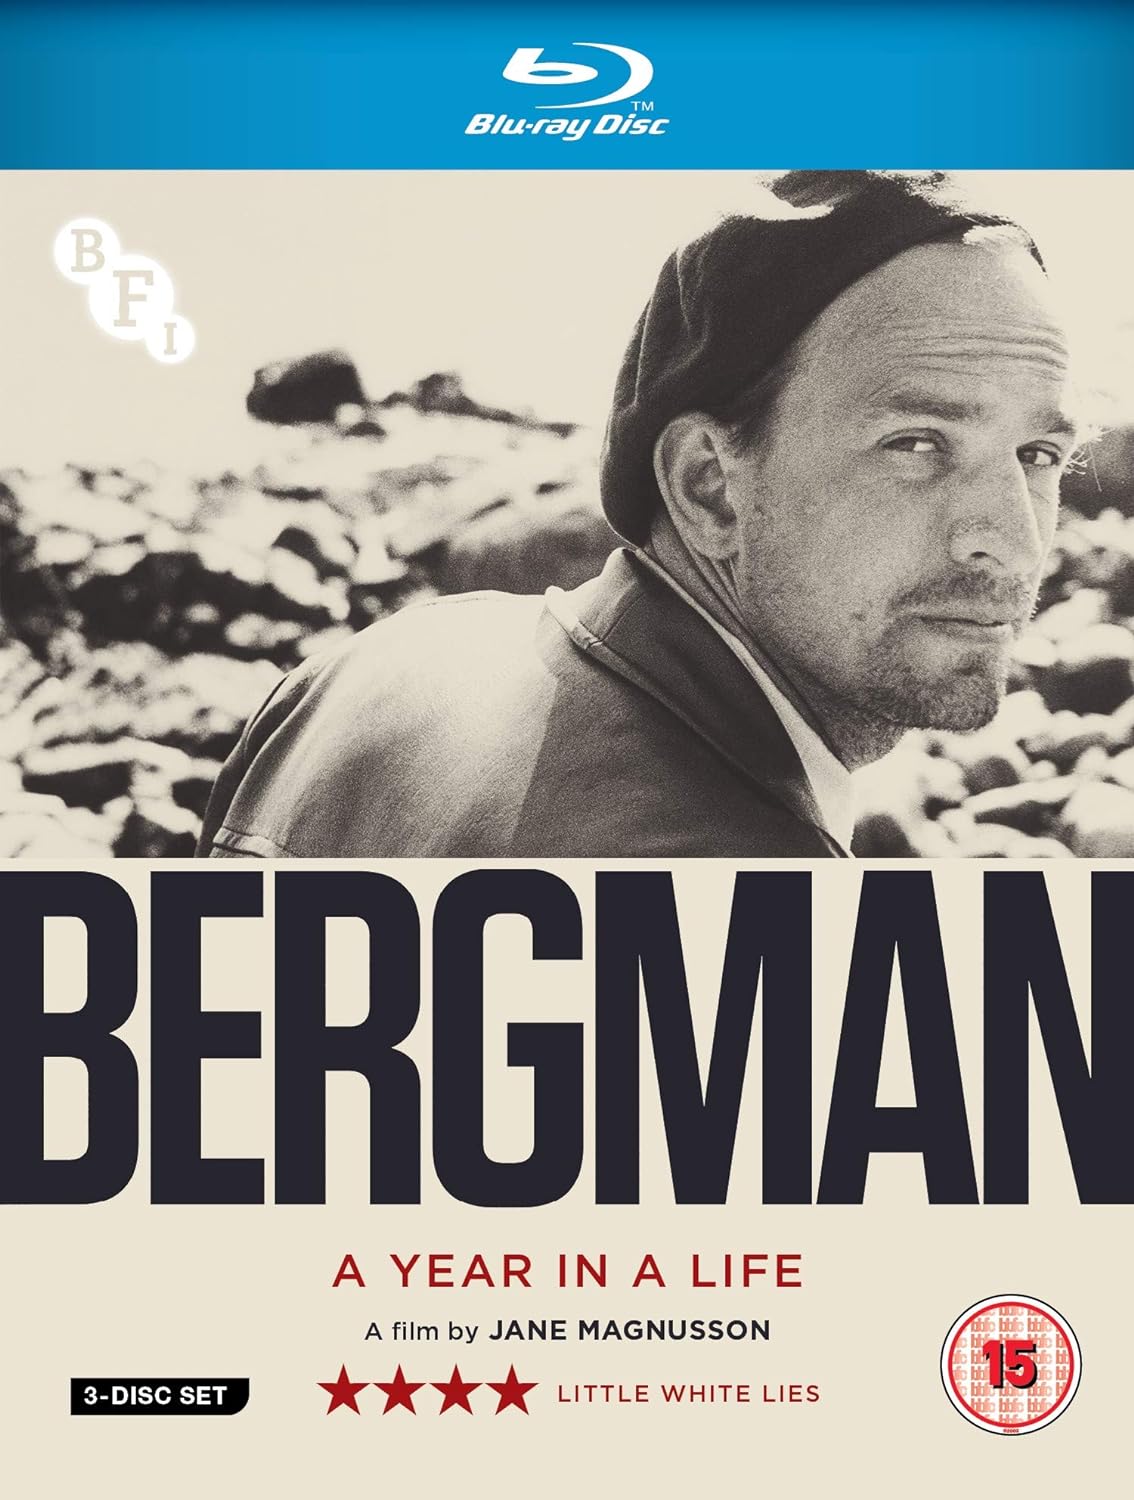 Ingmar Bergman - A Year in a Life (Blu-ray)